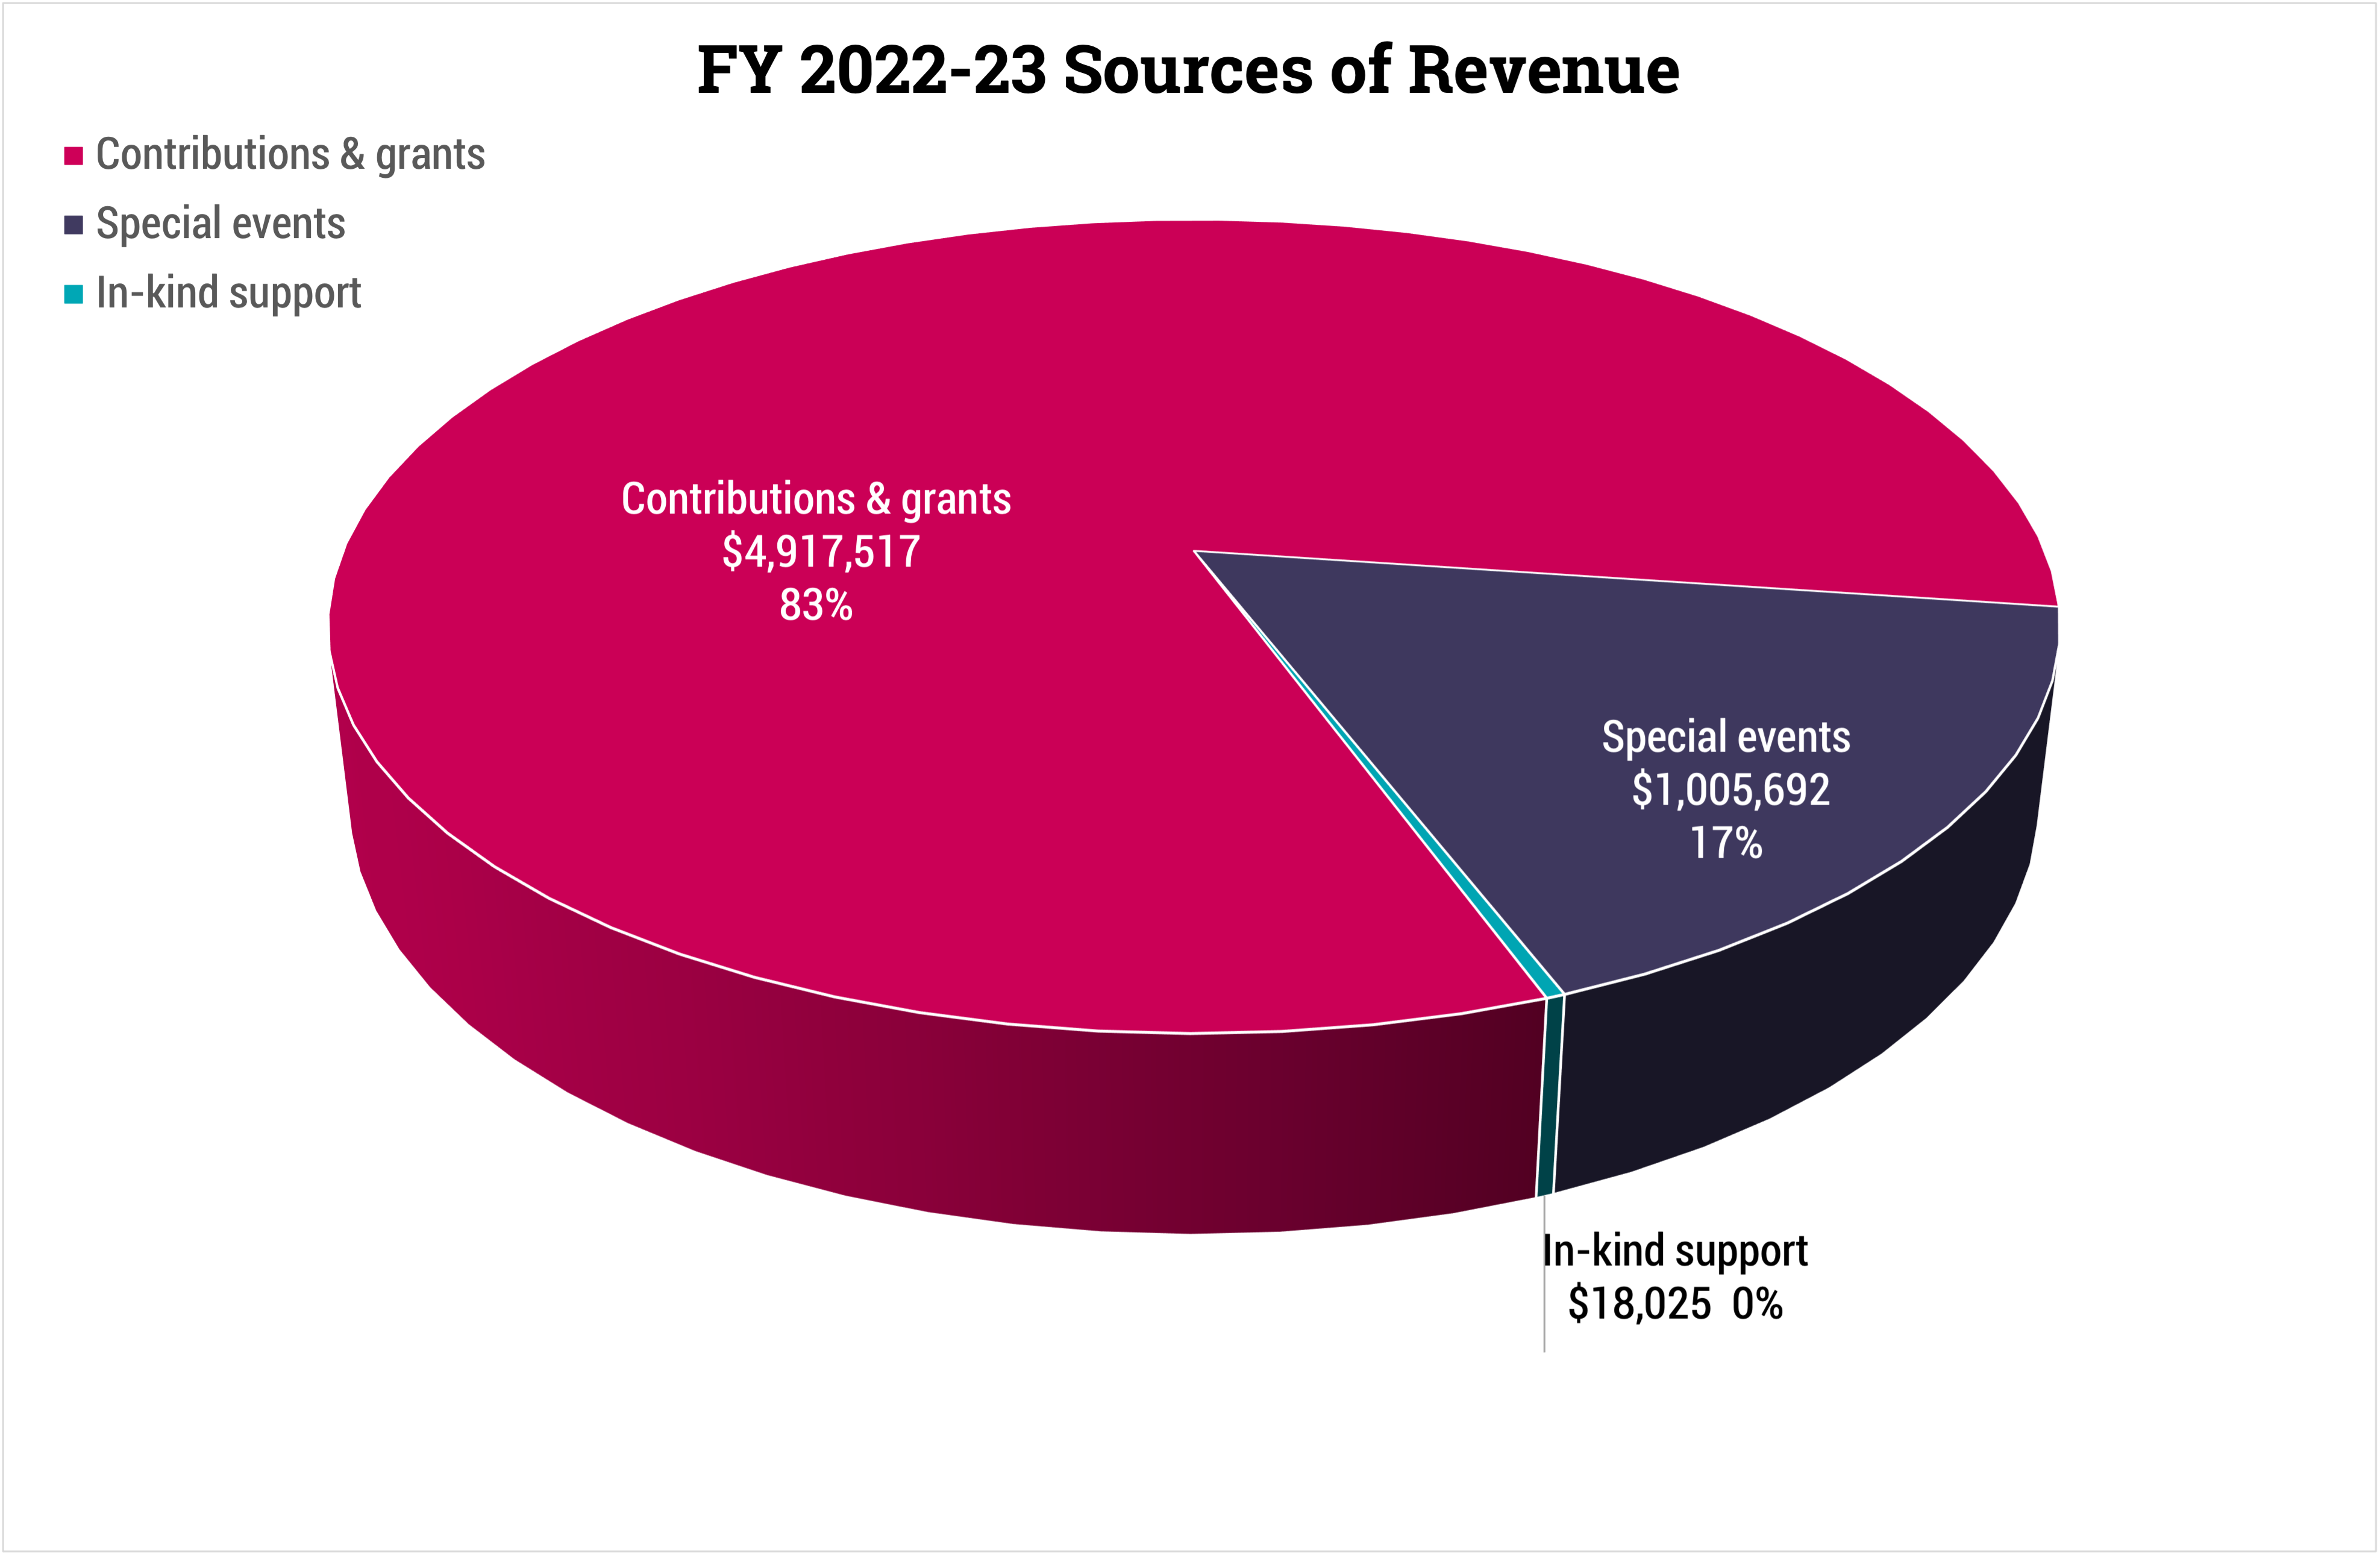 FY 2022-23 Sources of Revenue piechart